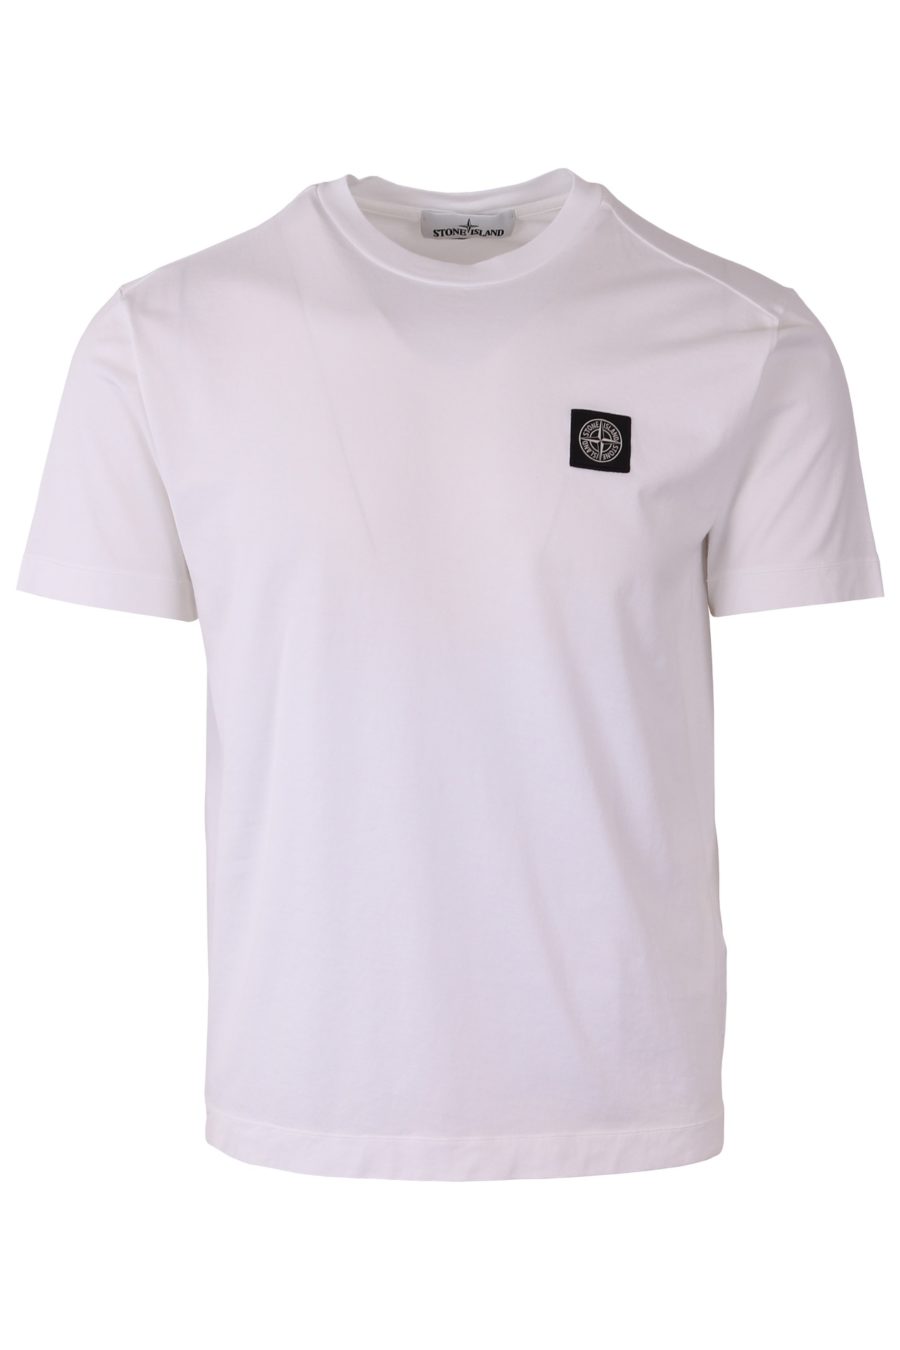 Stone Island T-shirt blanc avec patch logo - 2bcf50177a7f3e0c69ce41f1de8ed9d03bc69dce